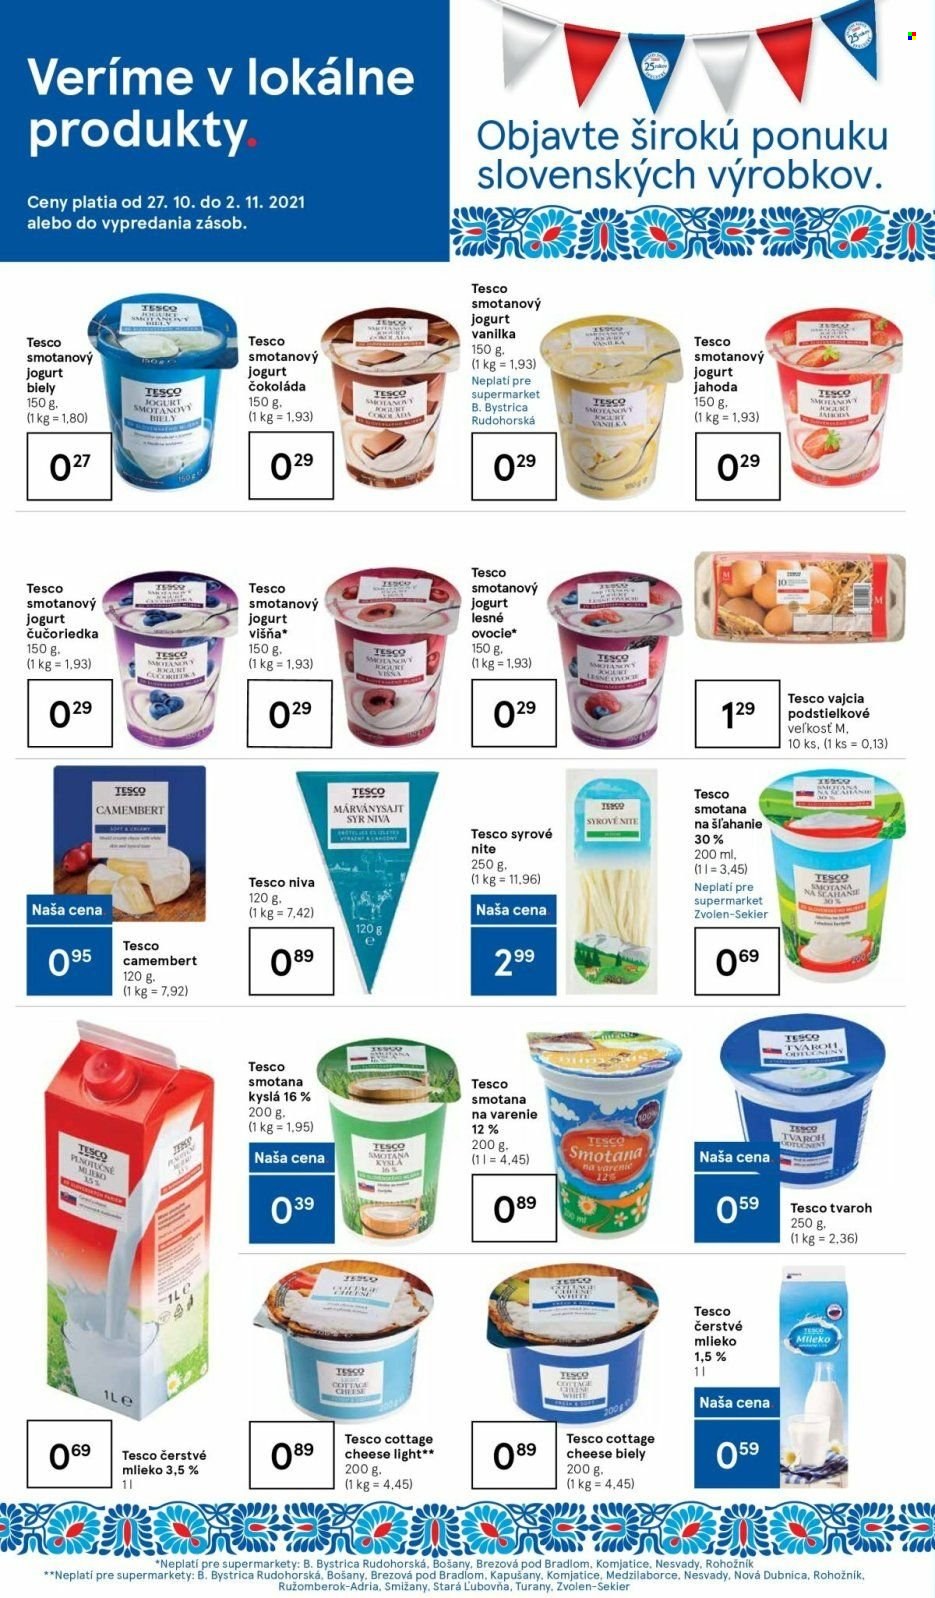 thumbnail - Leták TESCO supermarket - 27.10.2021 - 2.11.2021 - Produkty v akcii - syr, niva, camembert, cottage cheese, syrové nite, jogurt, smotanový jogurt, biely jogurt, ovocný jogurt, ochutený jogurt, mlieko, čerstvé mlieko, plnotučné mlieko, polotučné mlieko, vajcia, smotana kyslá, smotana na šlahanie, smotana na varenie, smotana. Strana 4.